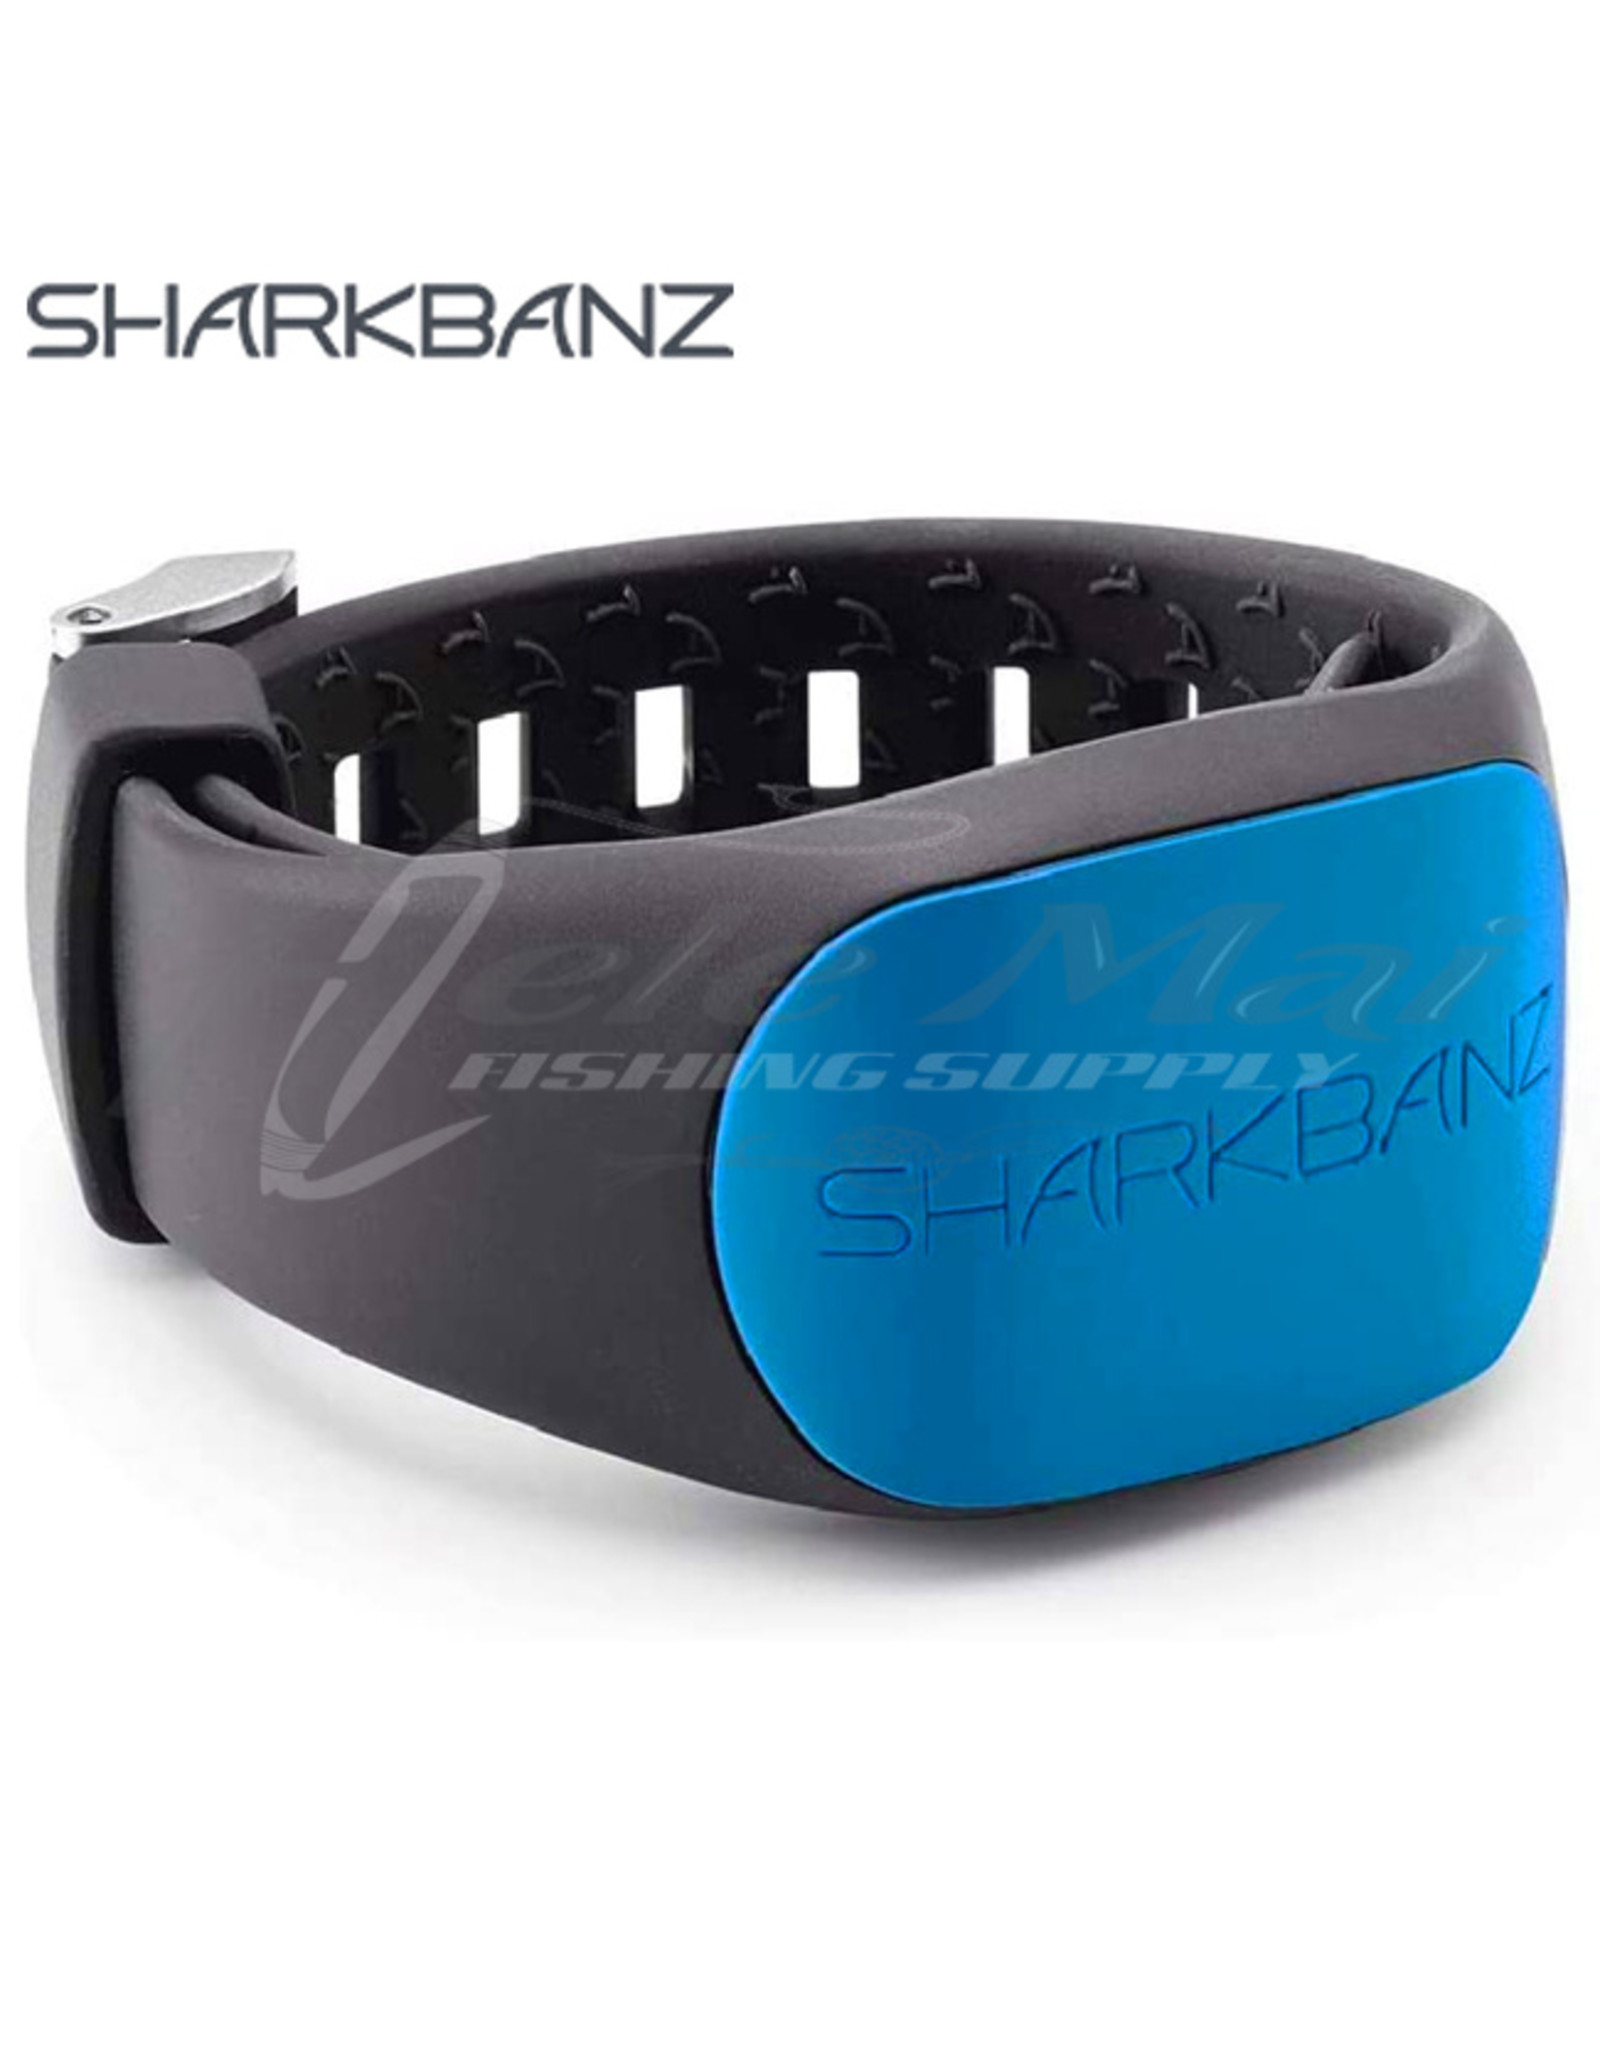 SHARKBANZ SHARKBANZ, ACTIVE SHARK DETERRANT BAND SLATE/AZURE